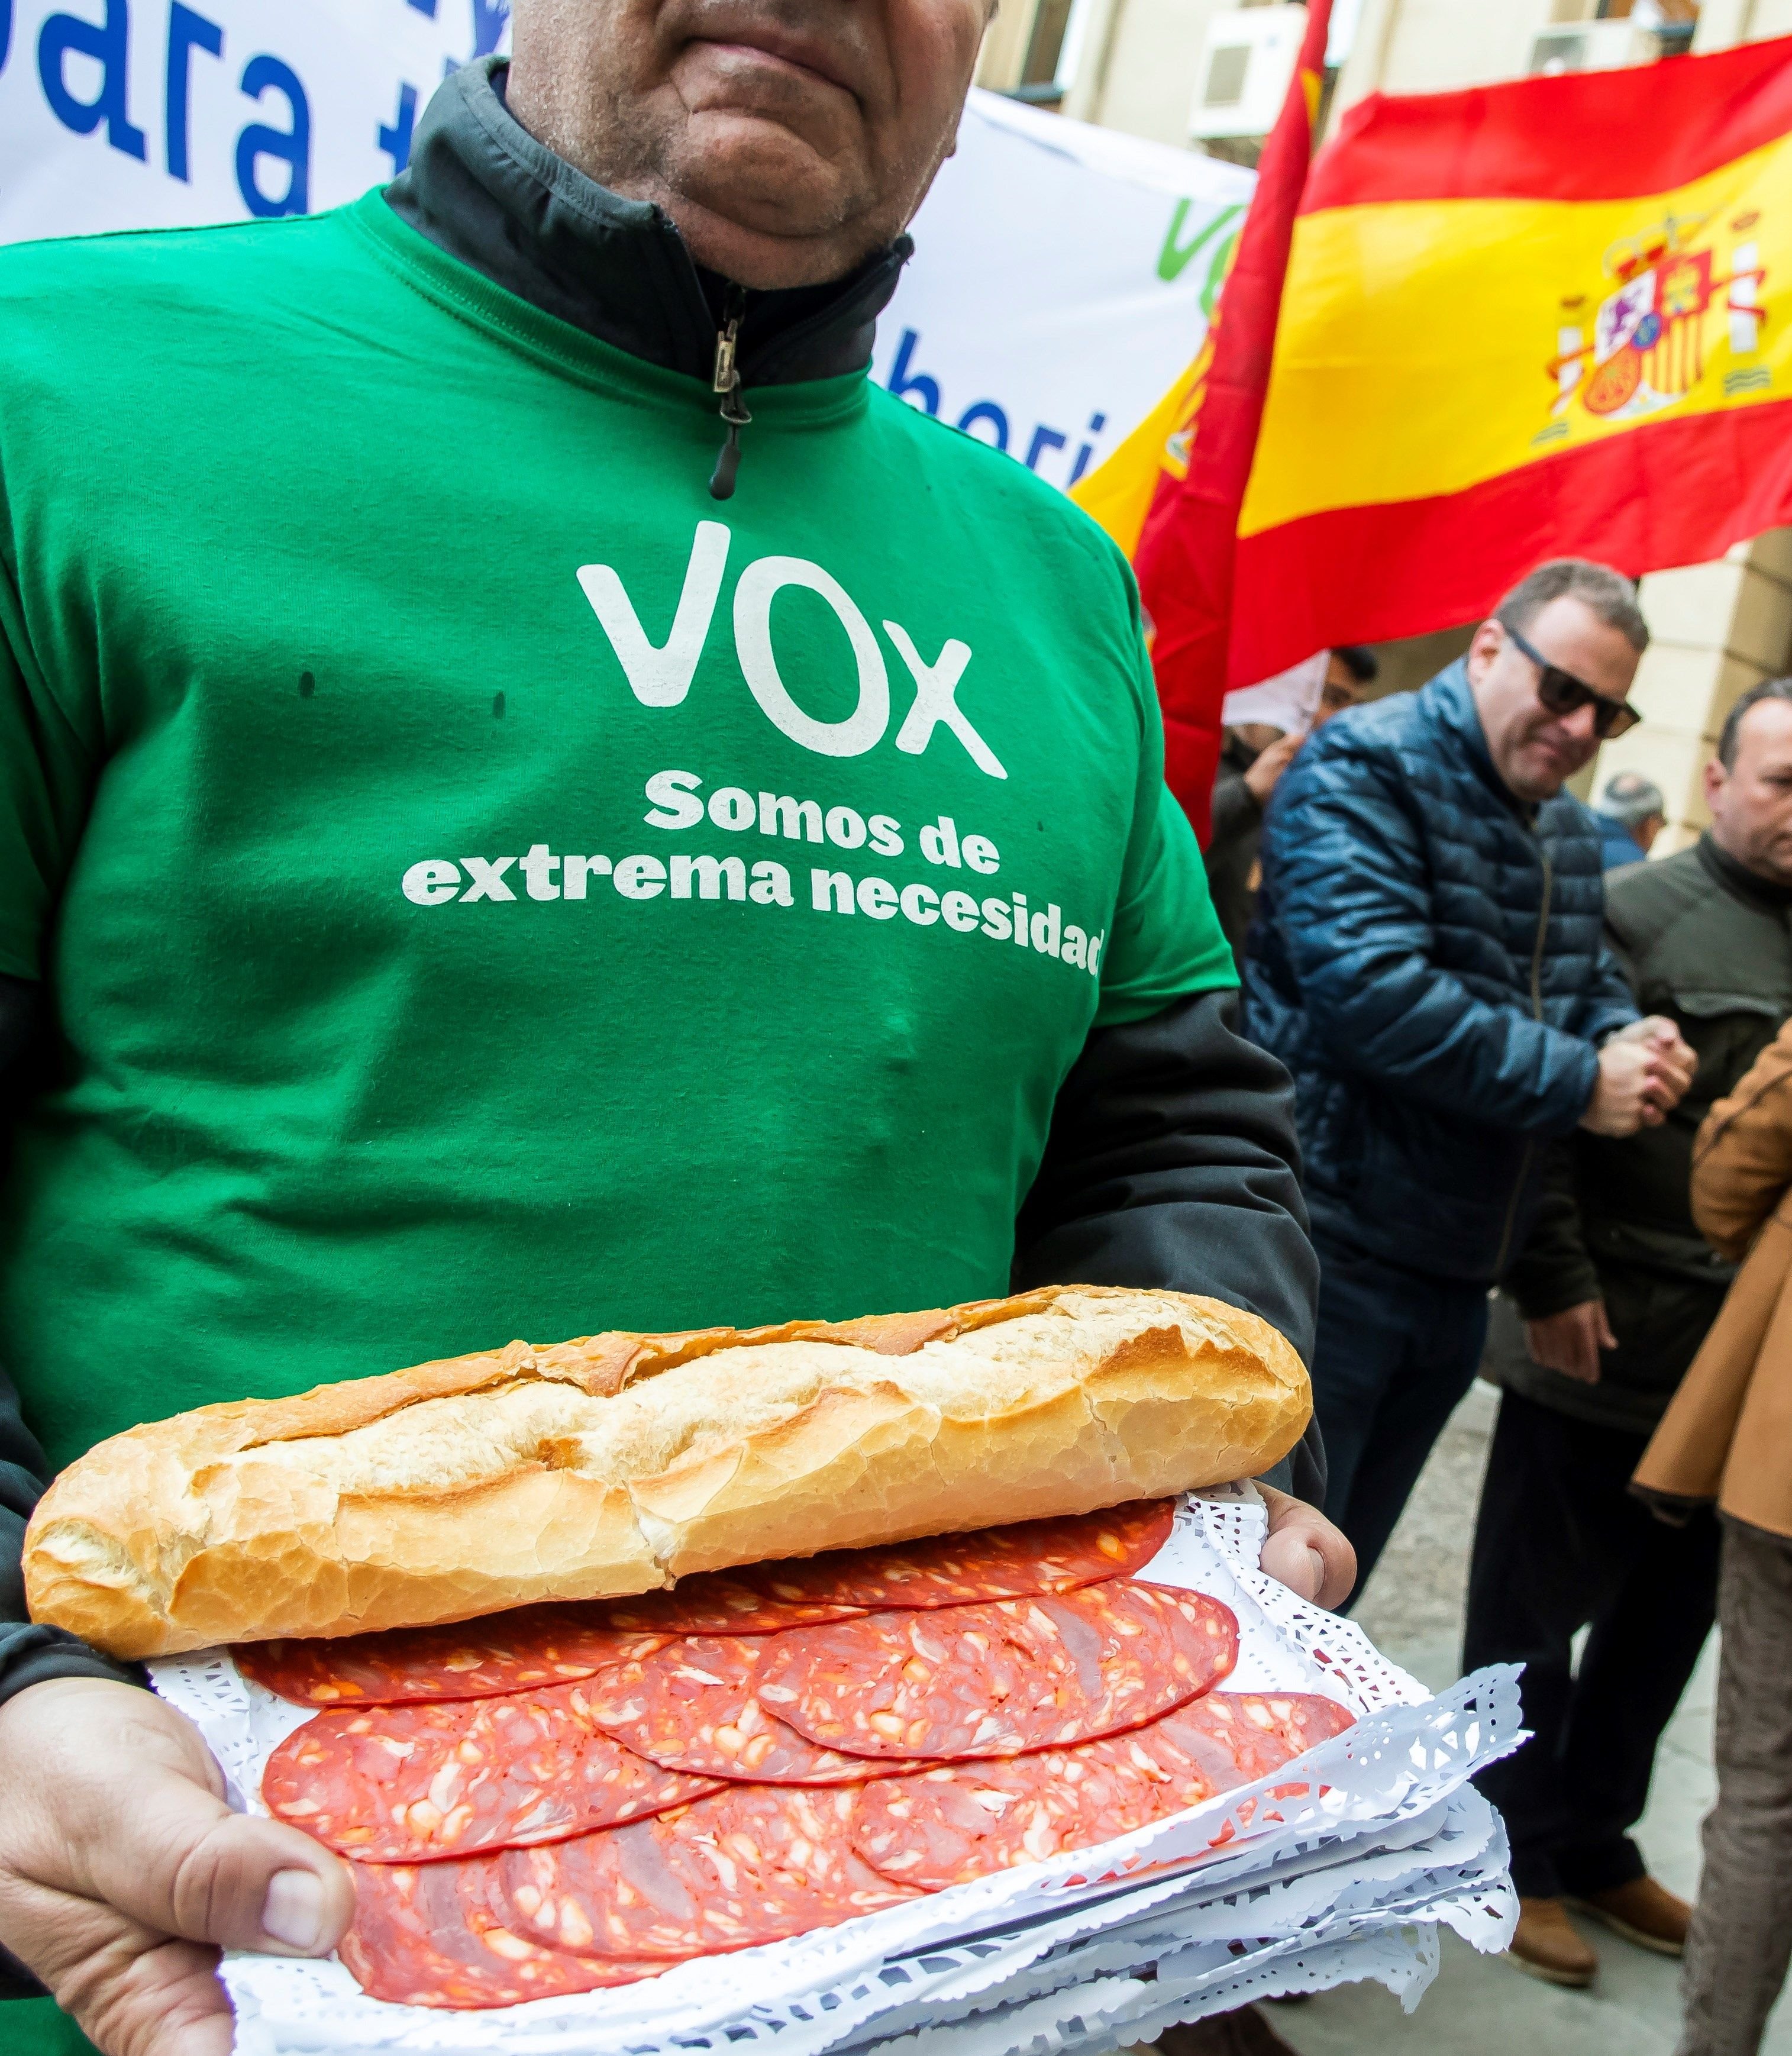 La premsa espanyola normalitza Vox; la catalana els anomena "ultres"